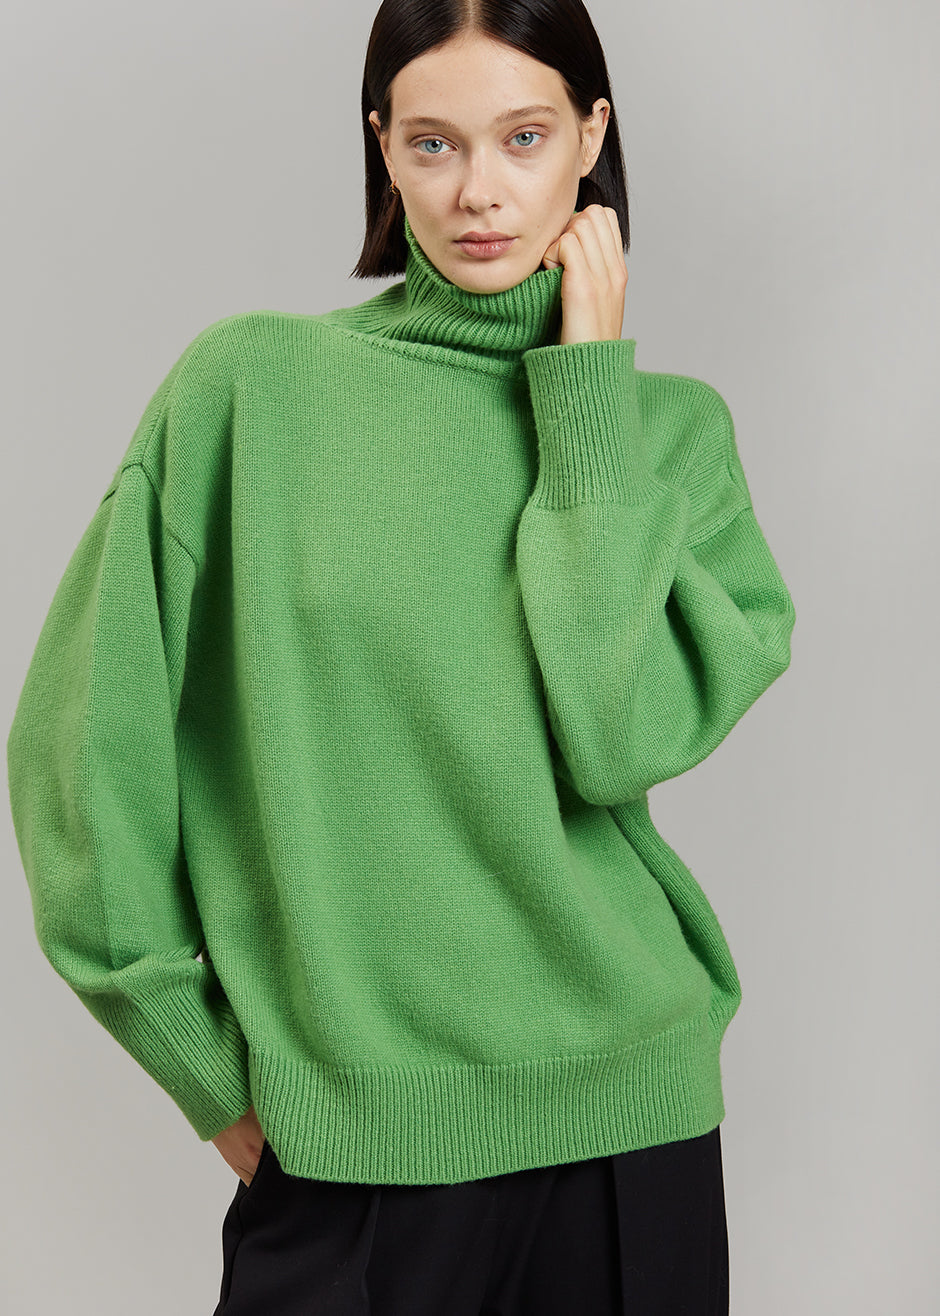 Joya Roll Neck Sweater - Kermit - 3